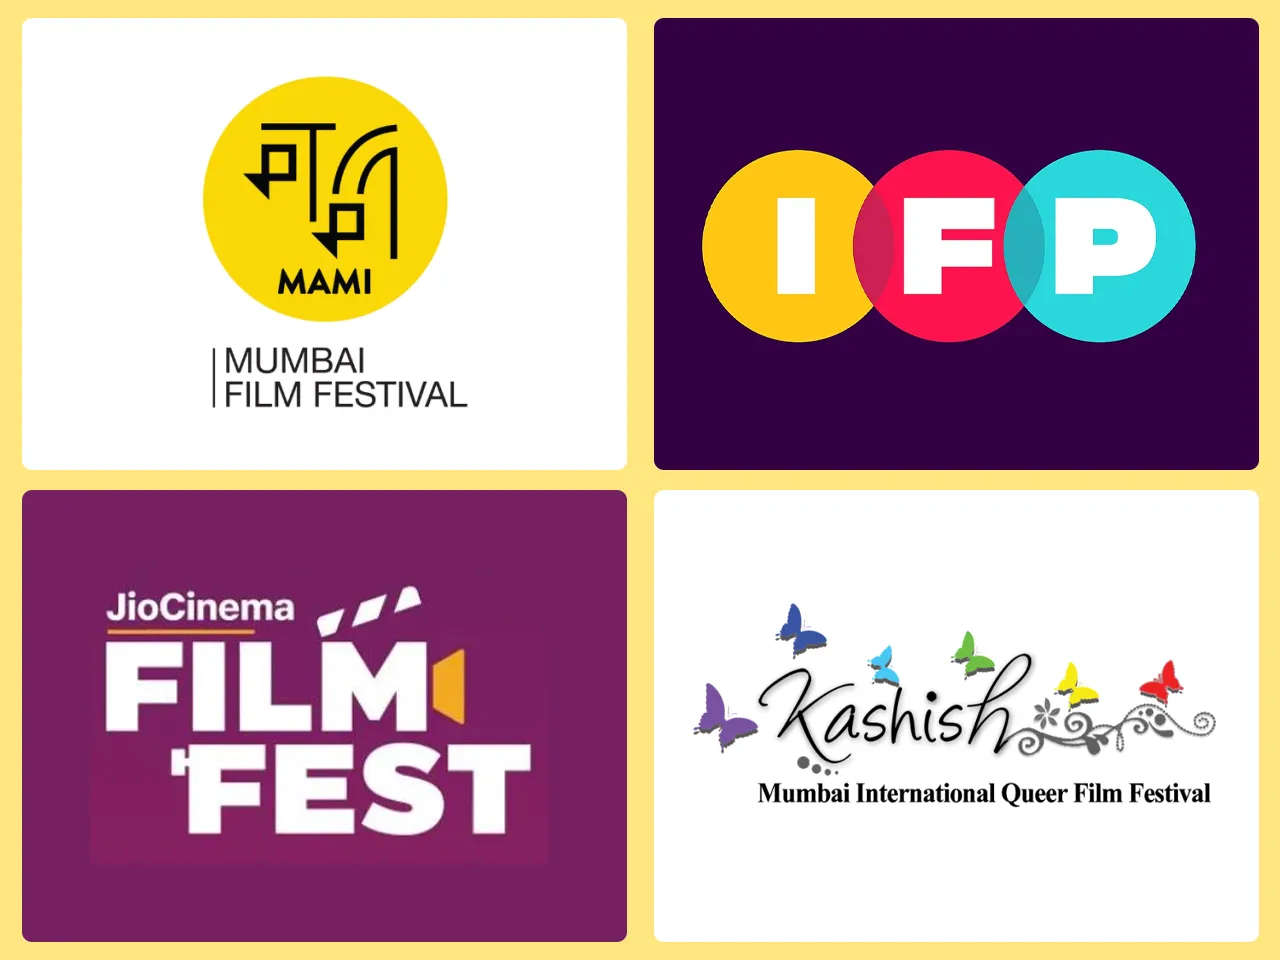 Film festivals